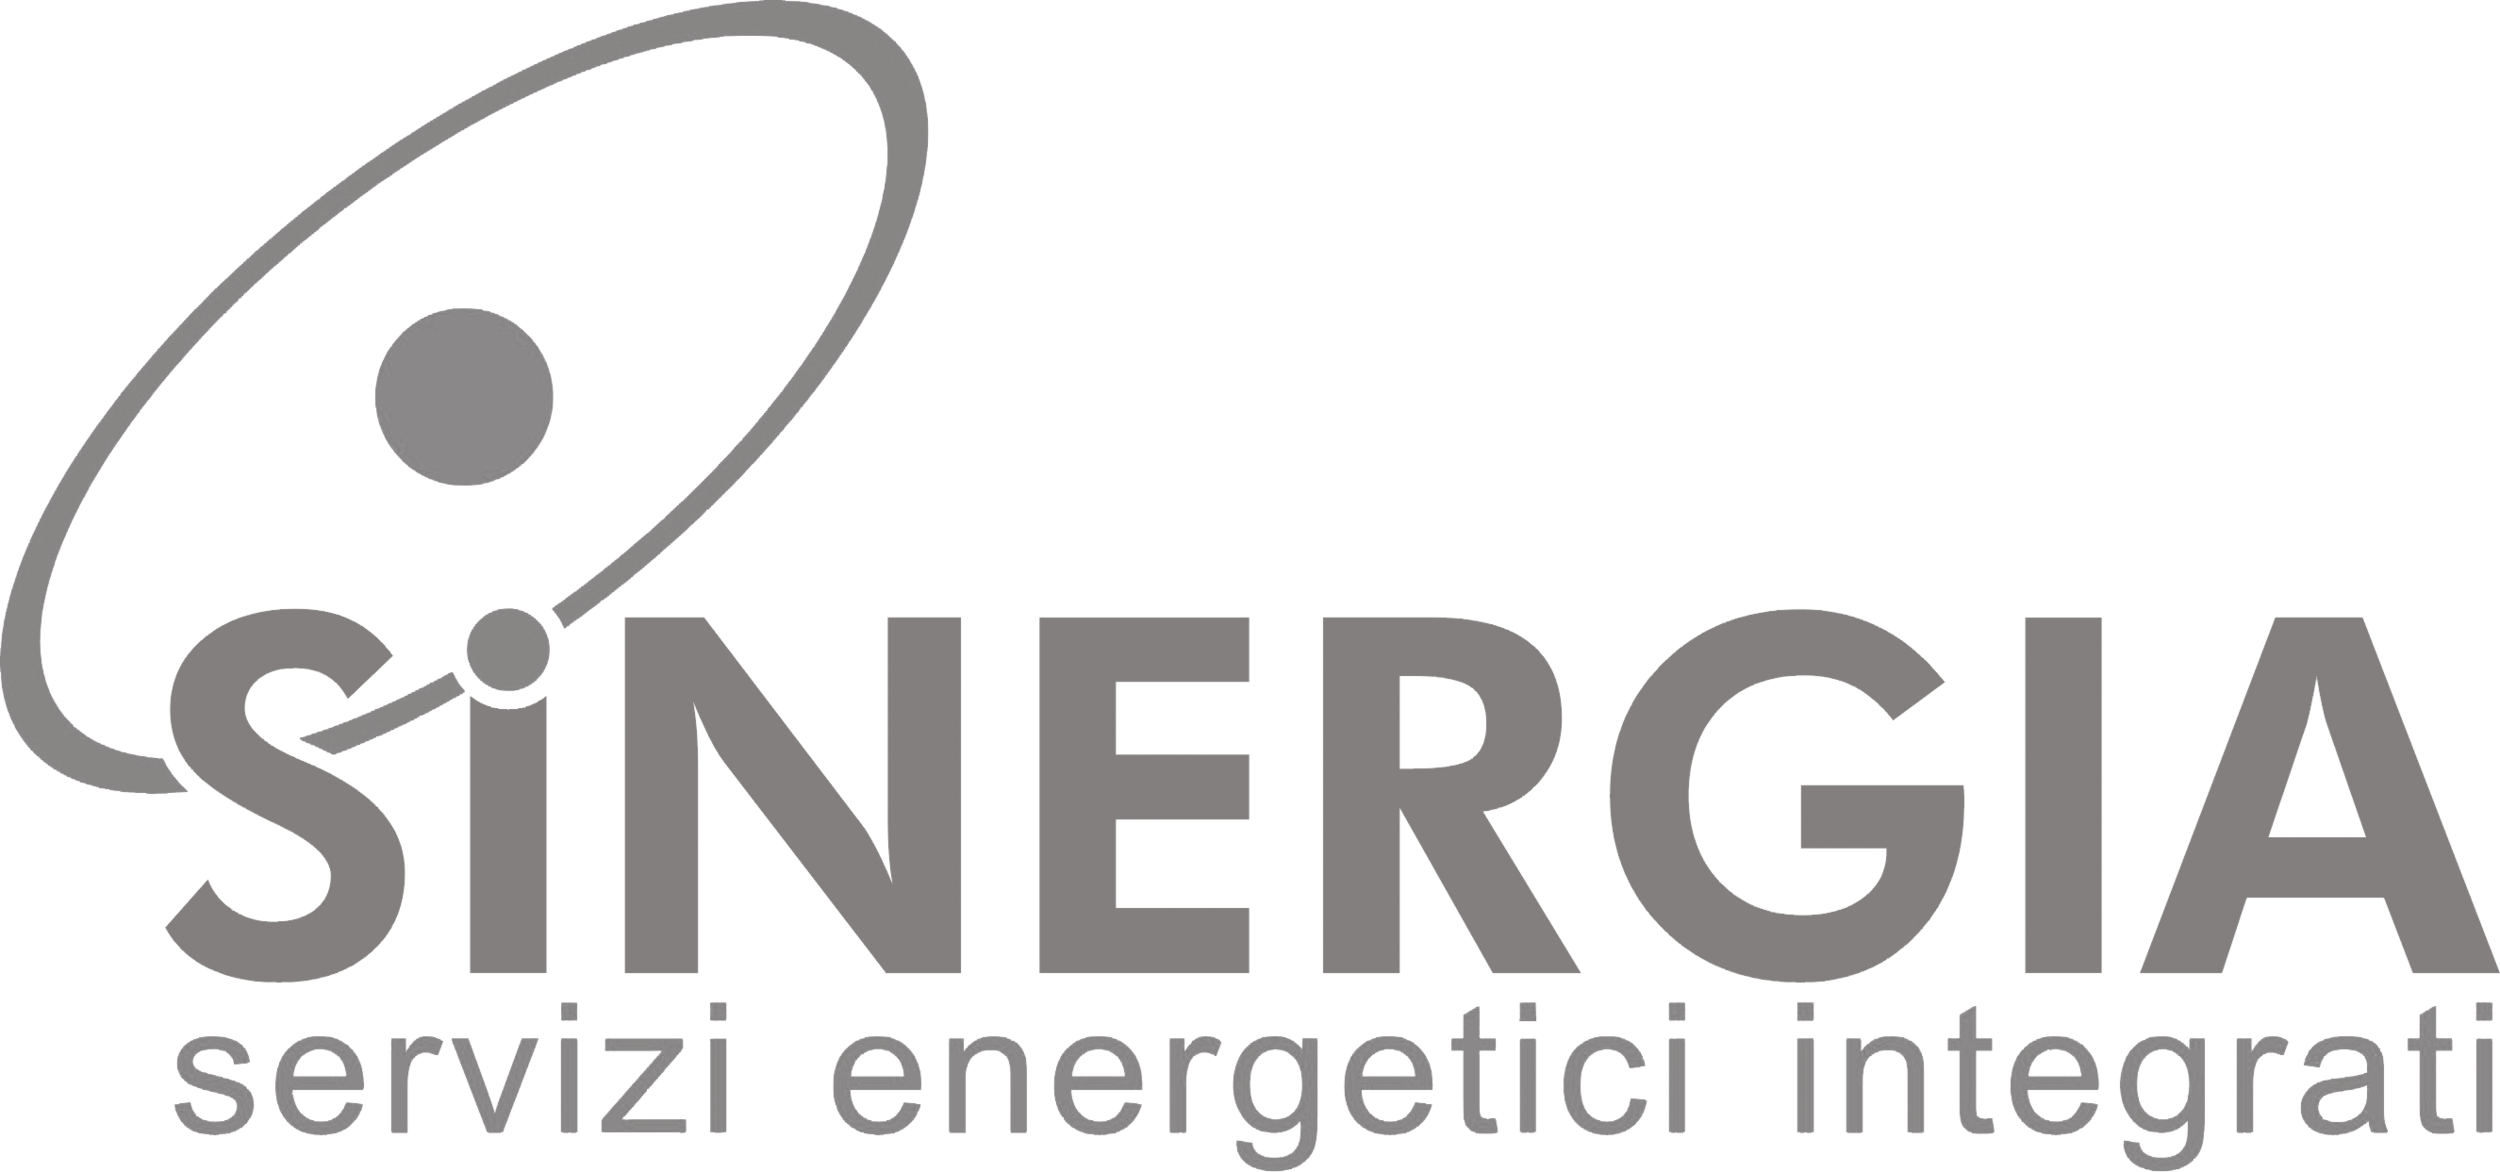 Logo Sinergia Grigio uniforme.png